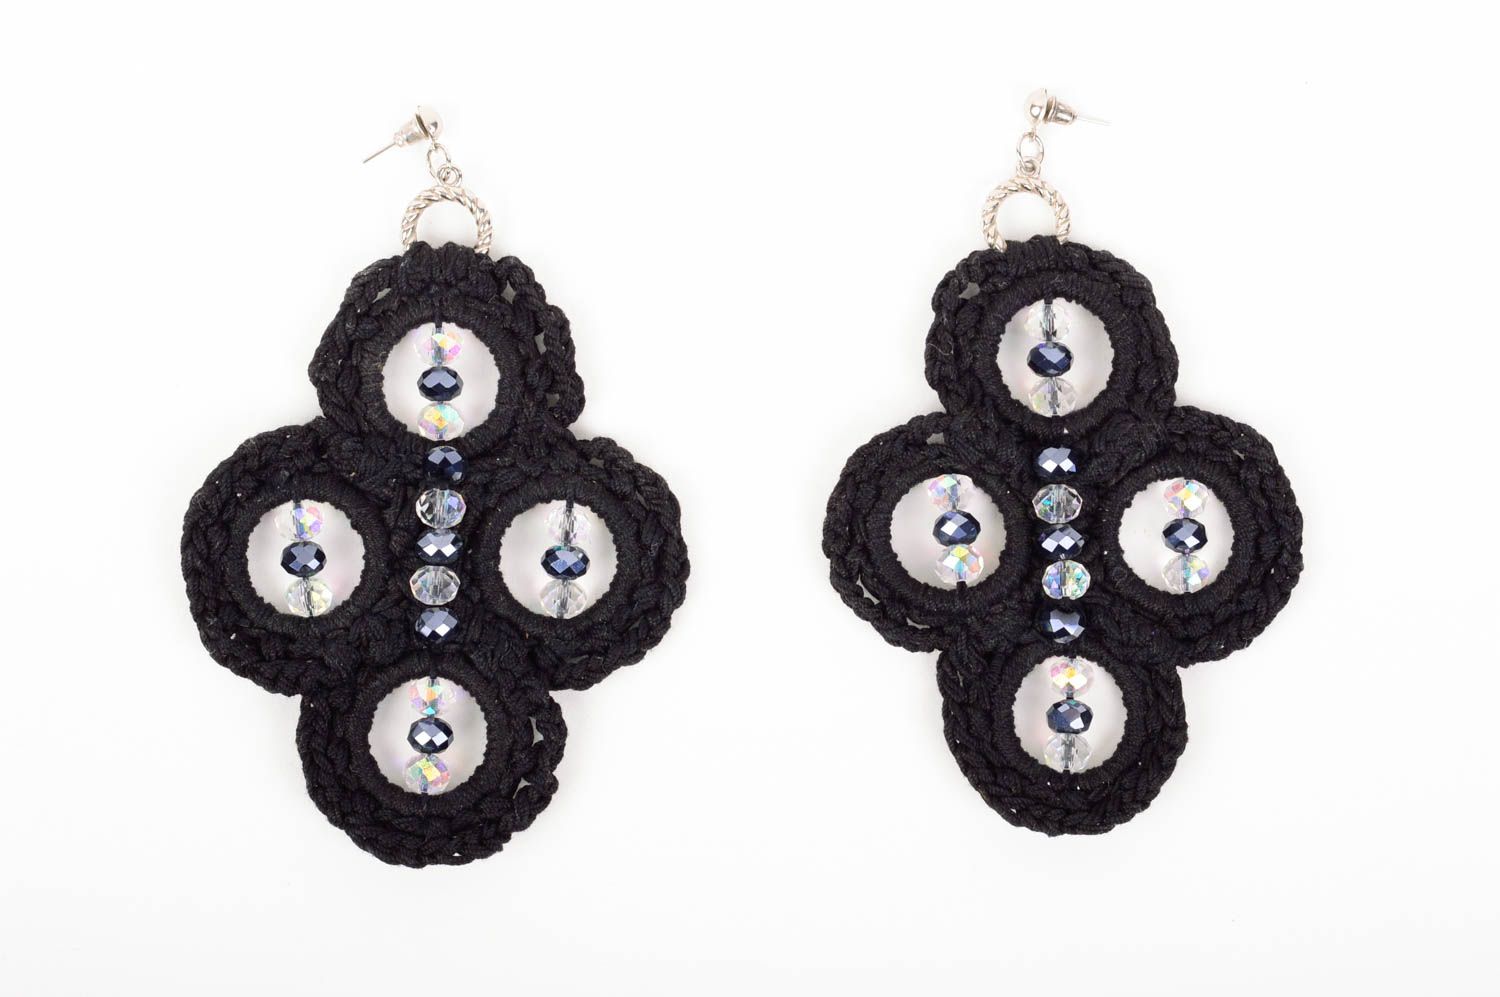 Handmade earrings designer earrings braided earrings unusual gift for girls photo 1